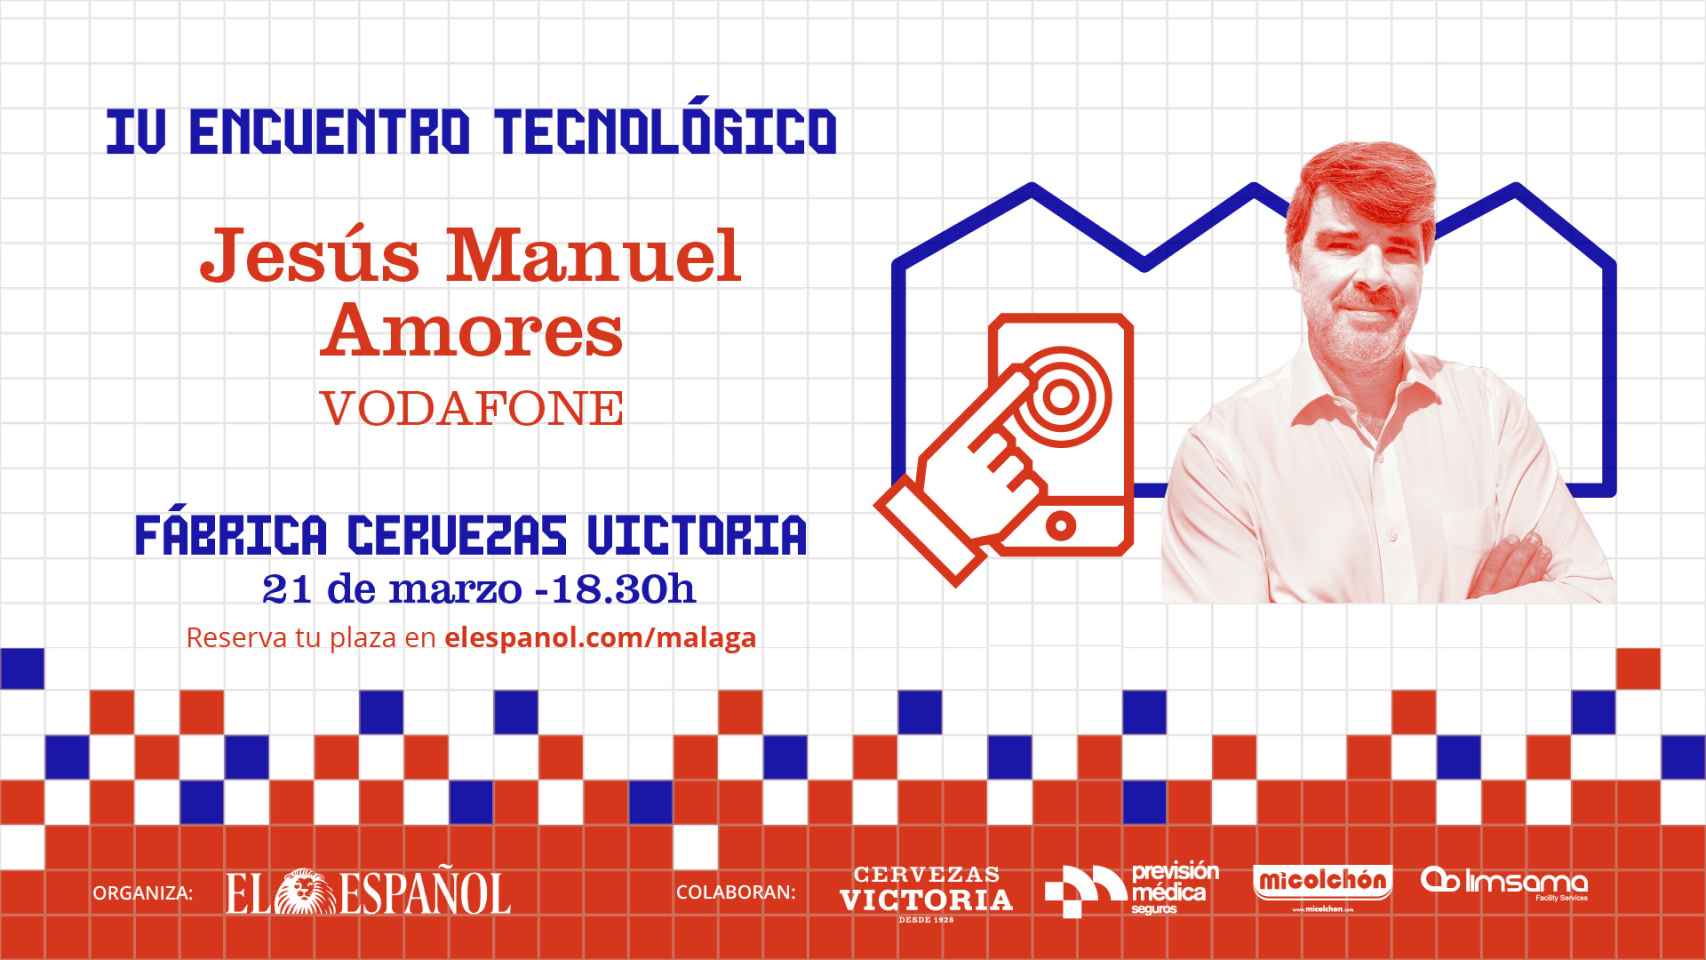 Jesús Amores, de Vodafone, próximo protagonista de los Encuentros Tecnológicos.